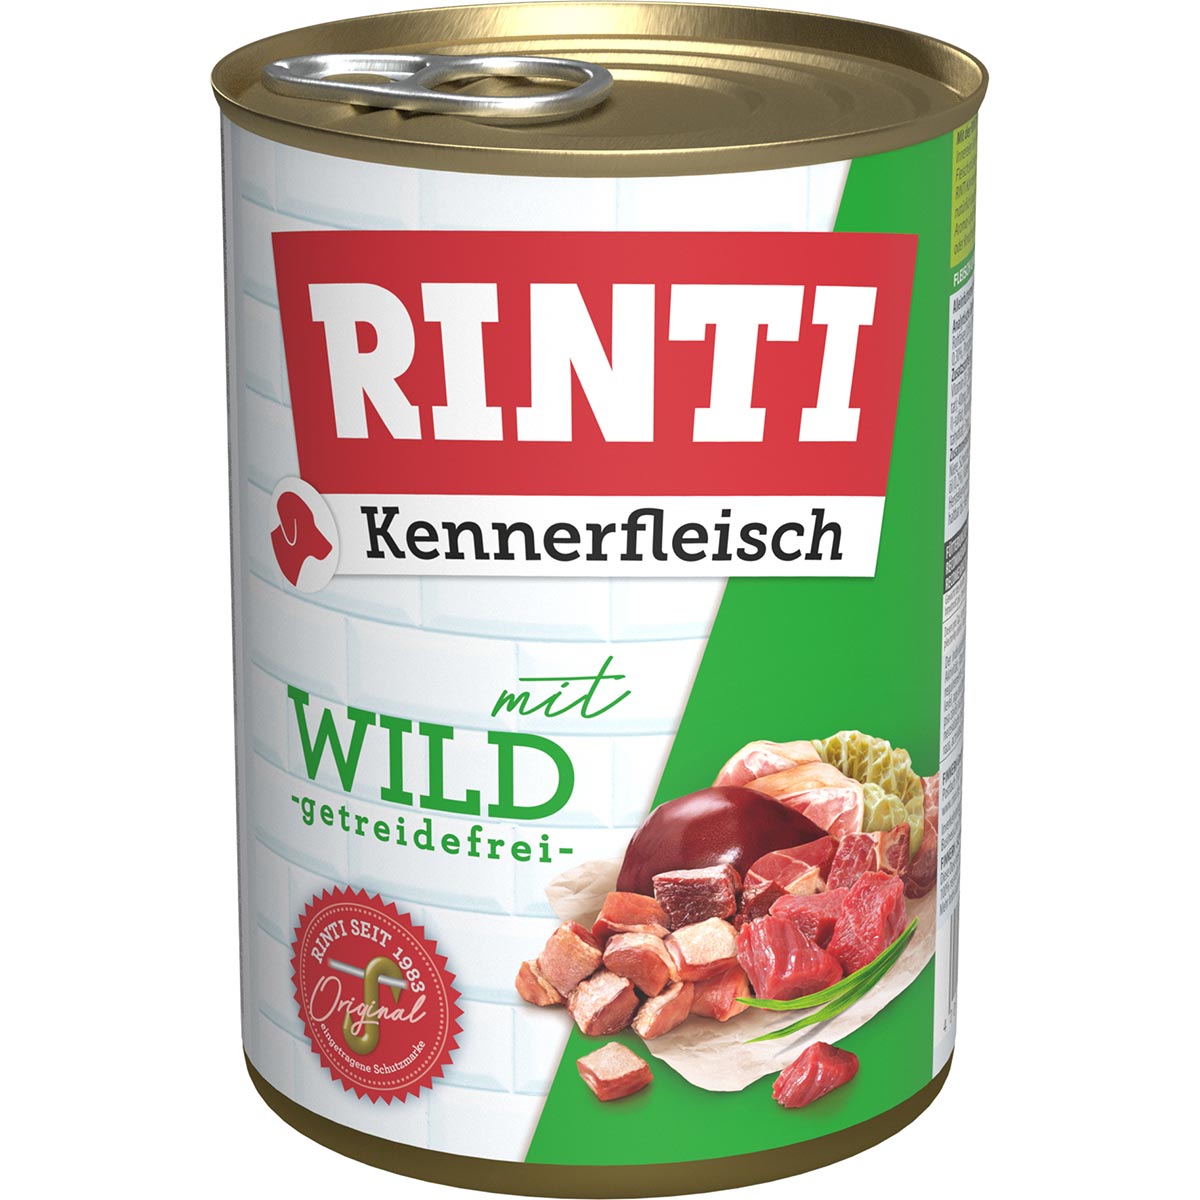 Rinti Kennerfleisch mit Wild 24x400g von Rinti